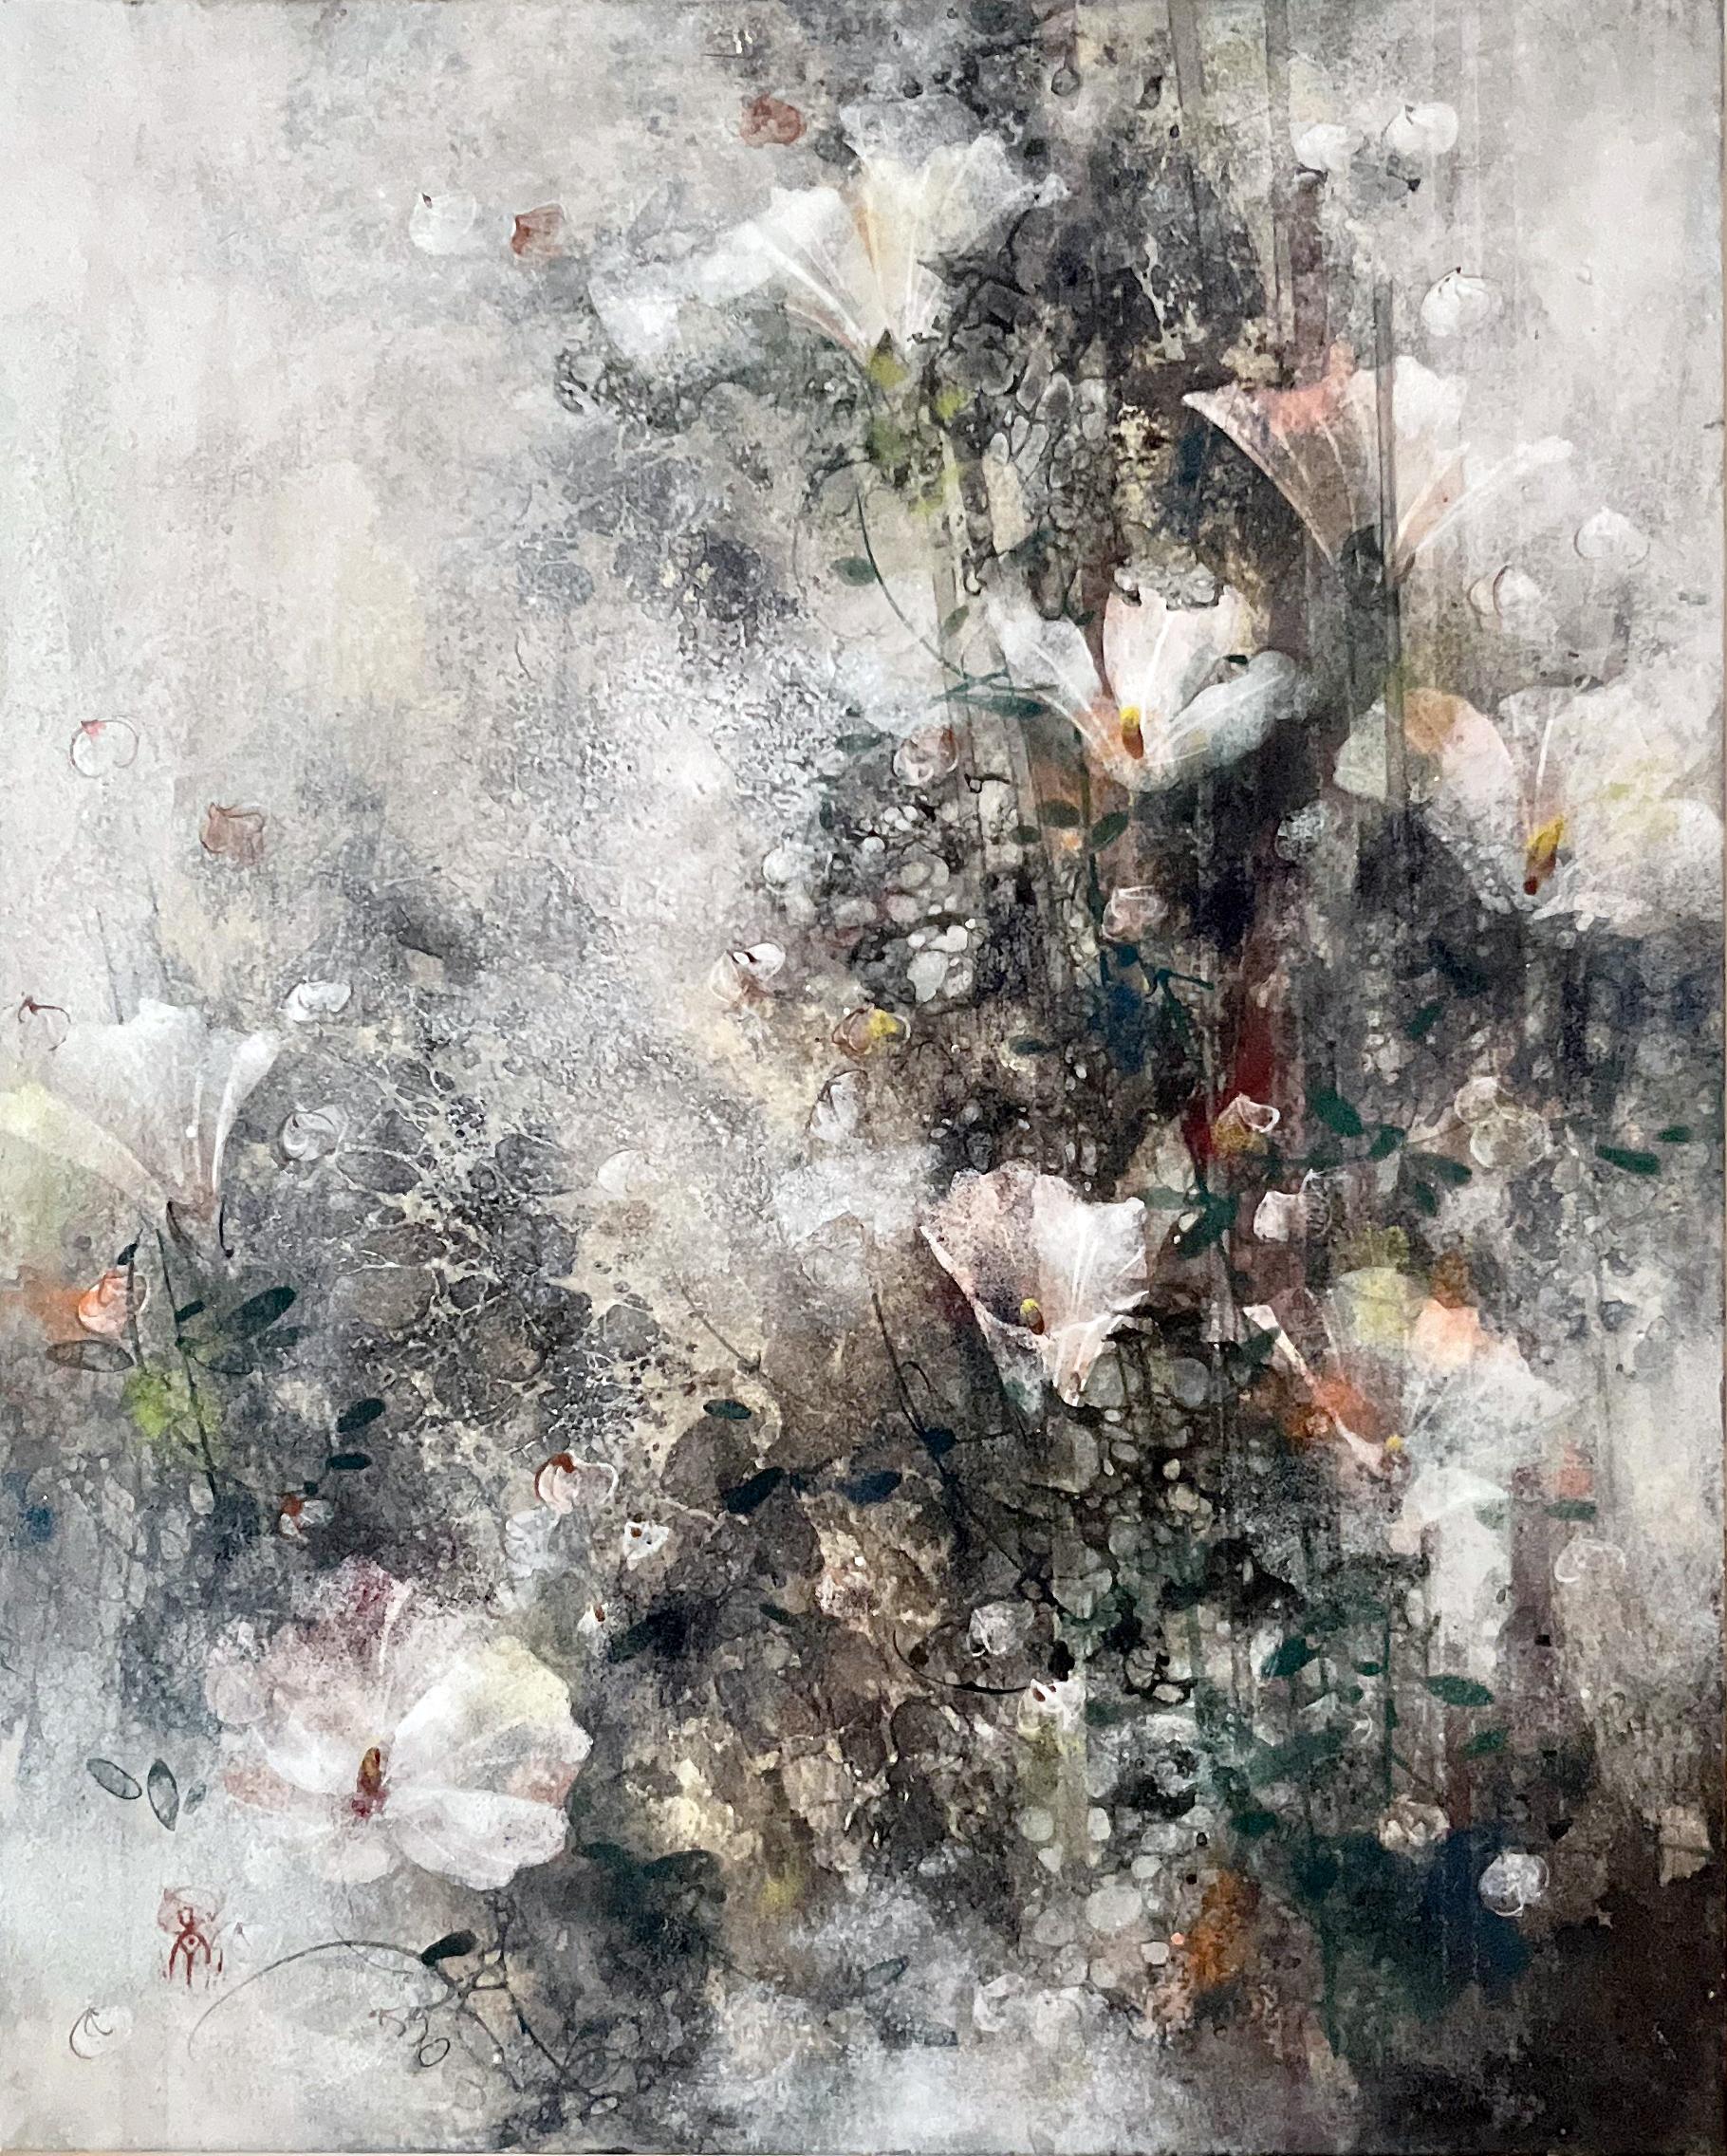 Flachsfeld von Chen Yiching - Zeitgenössische Nihonga-Malerei, Blumen, Pigmente